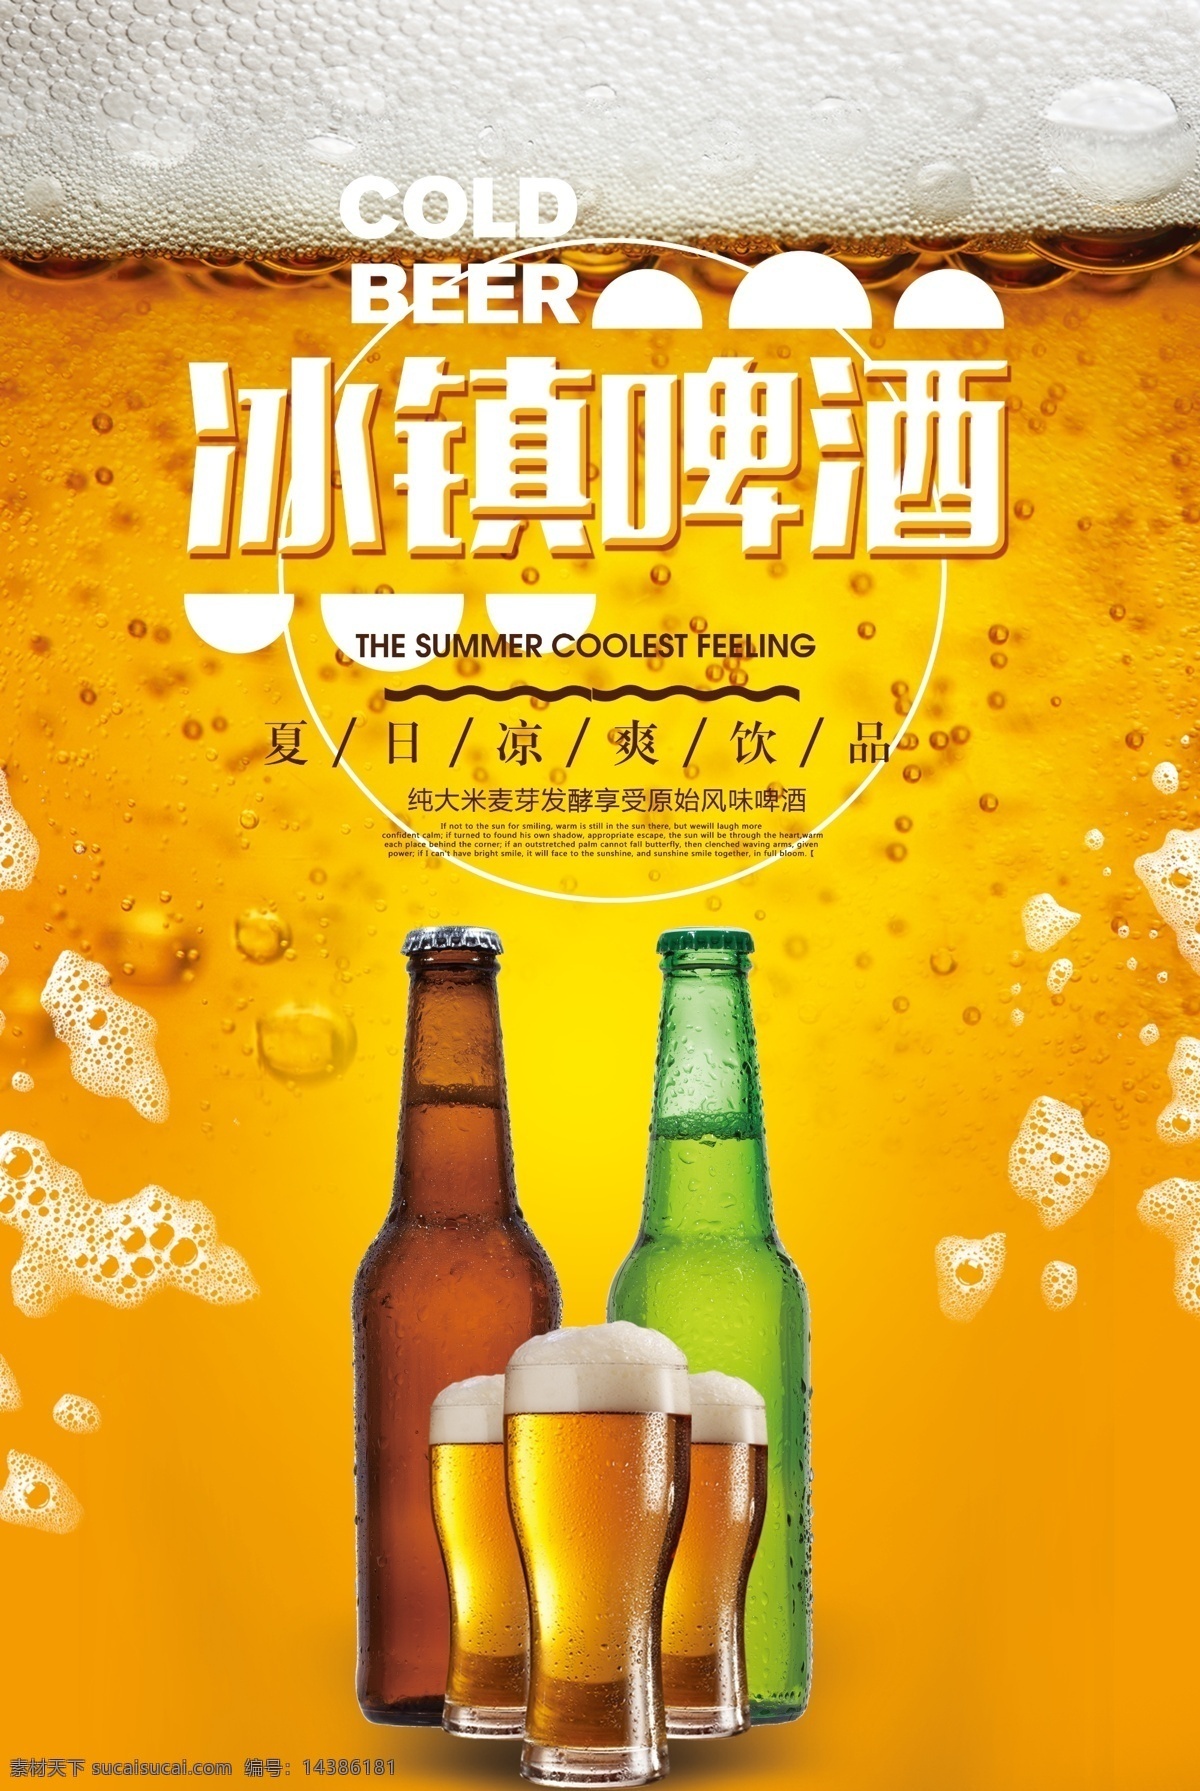 创意 夏日 冰镇 啤酒 海报 啤酒海报 啤酒素材 啤酒宣传 冰镇啤酒 啤酒创意 创意啤酒